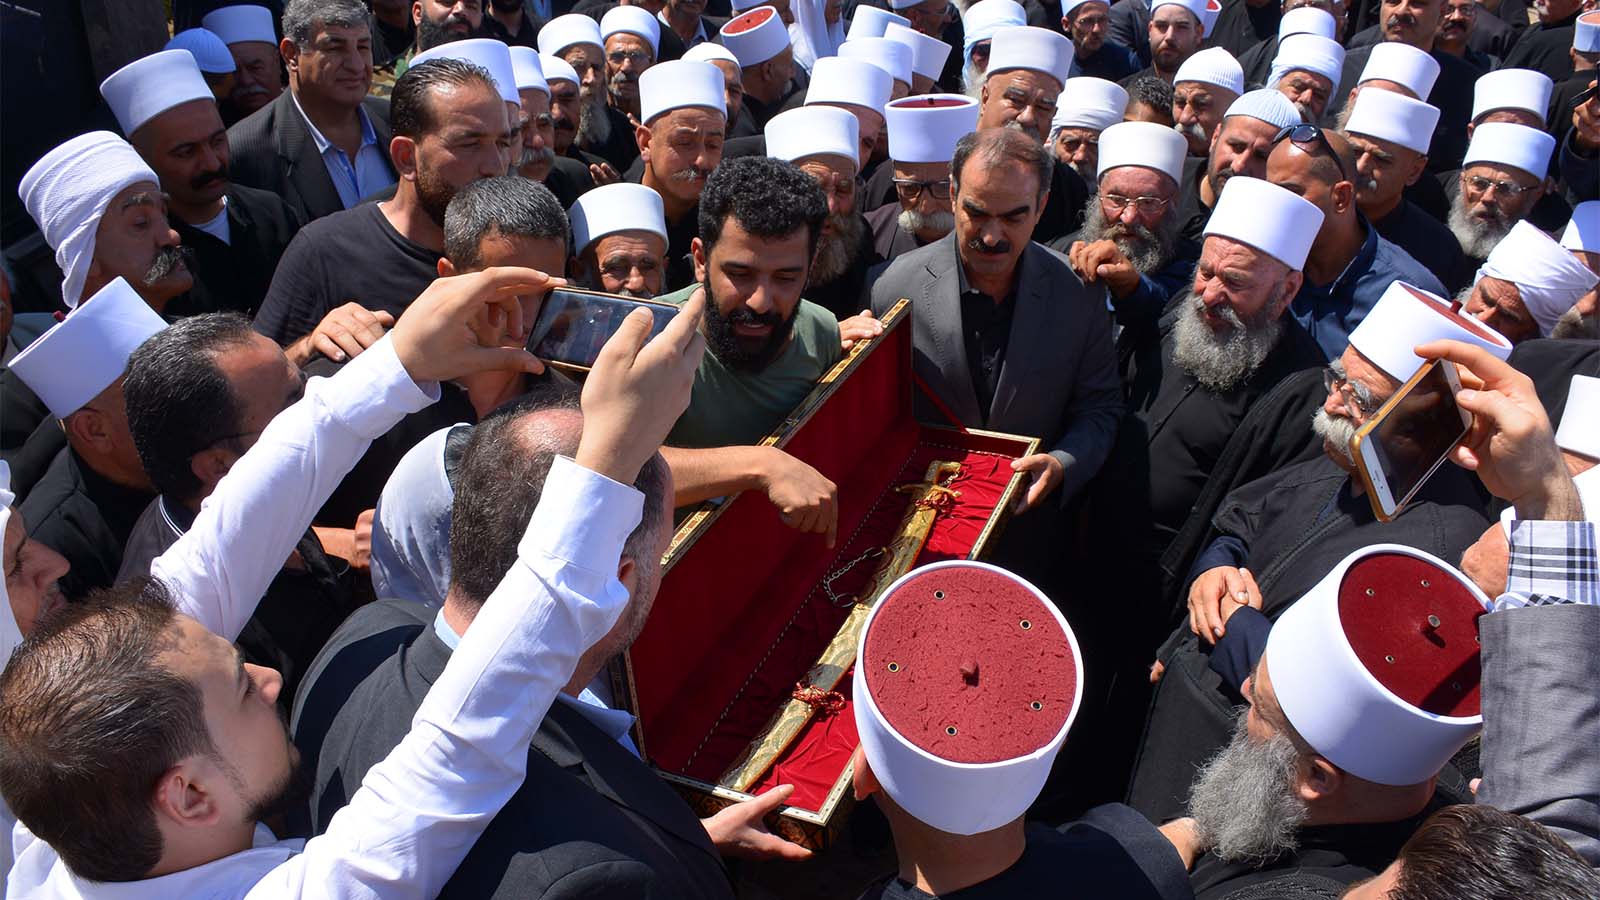 אנשי דת דרוזים מישראל בכנס בסוריה ליד חרב הבריגדיר עסאם זהר אלדין, ספטמבר 2018 (קרדיט: ועדת הקשר)